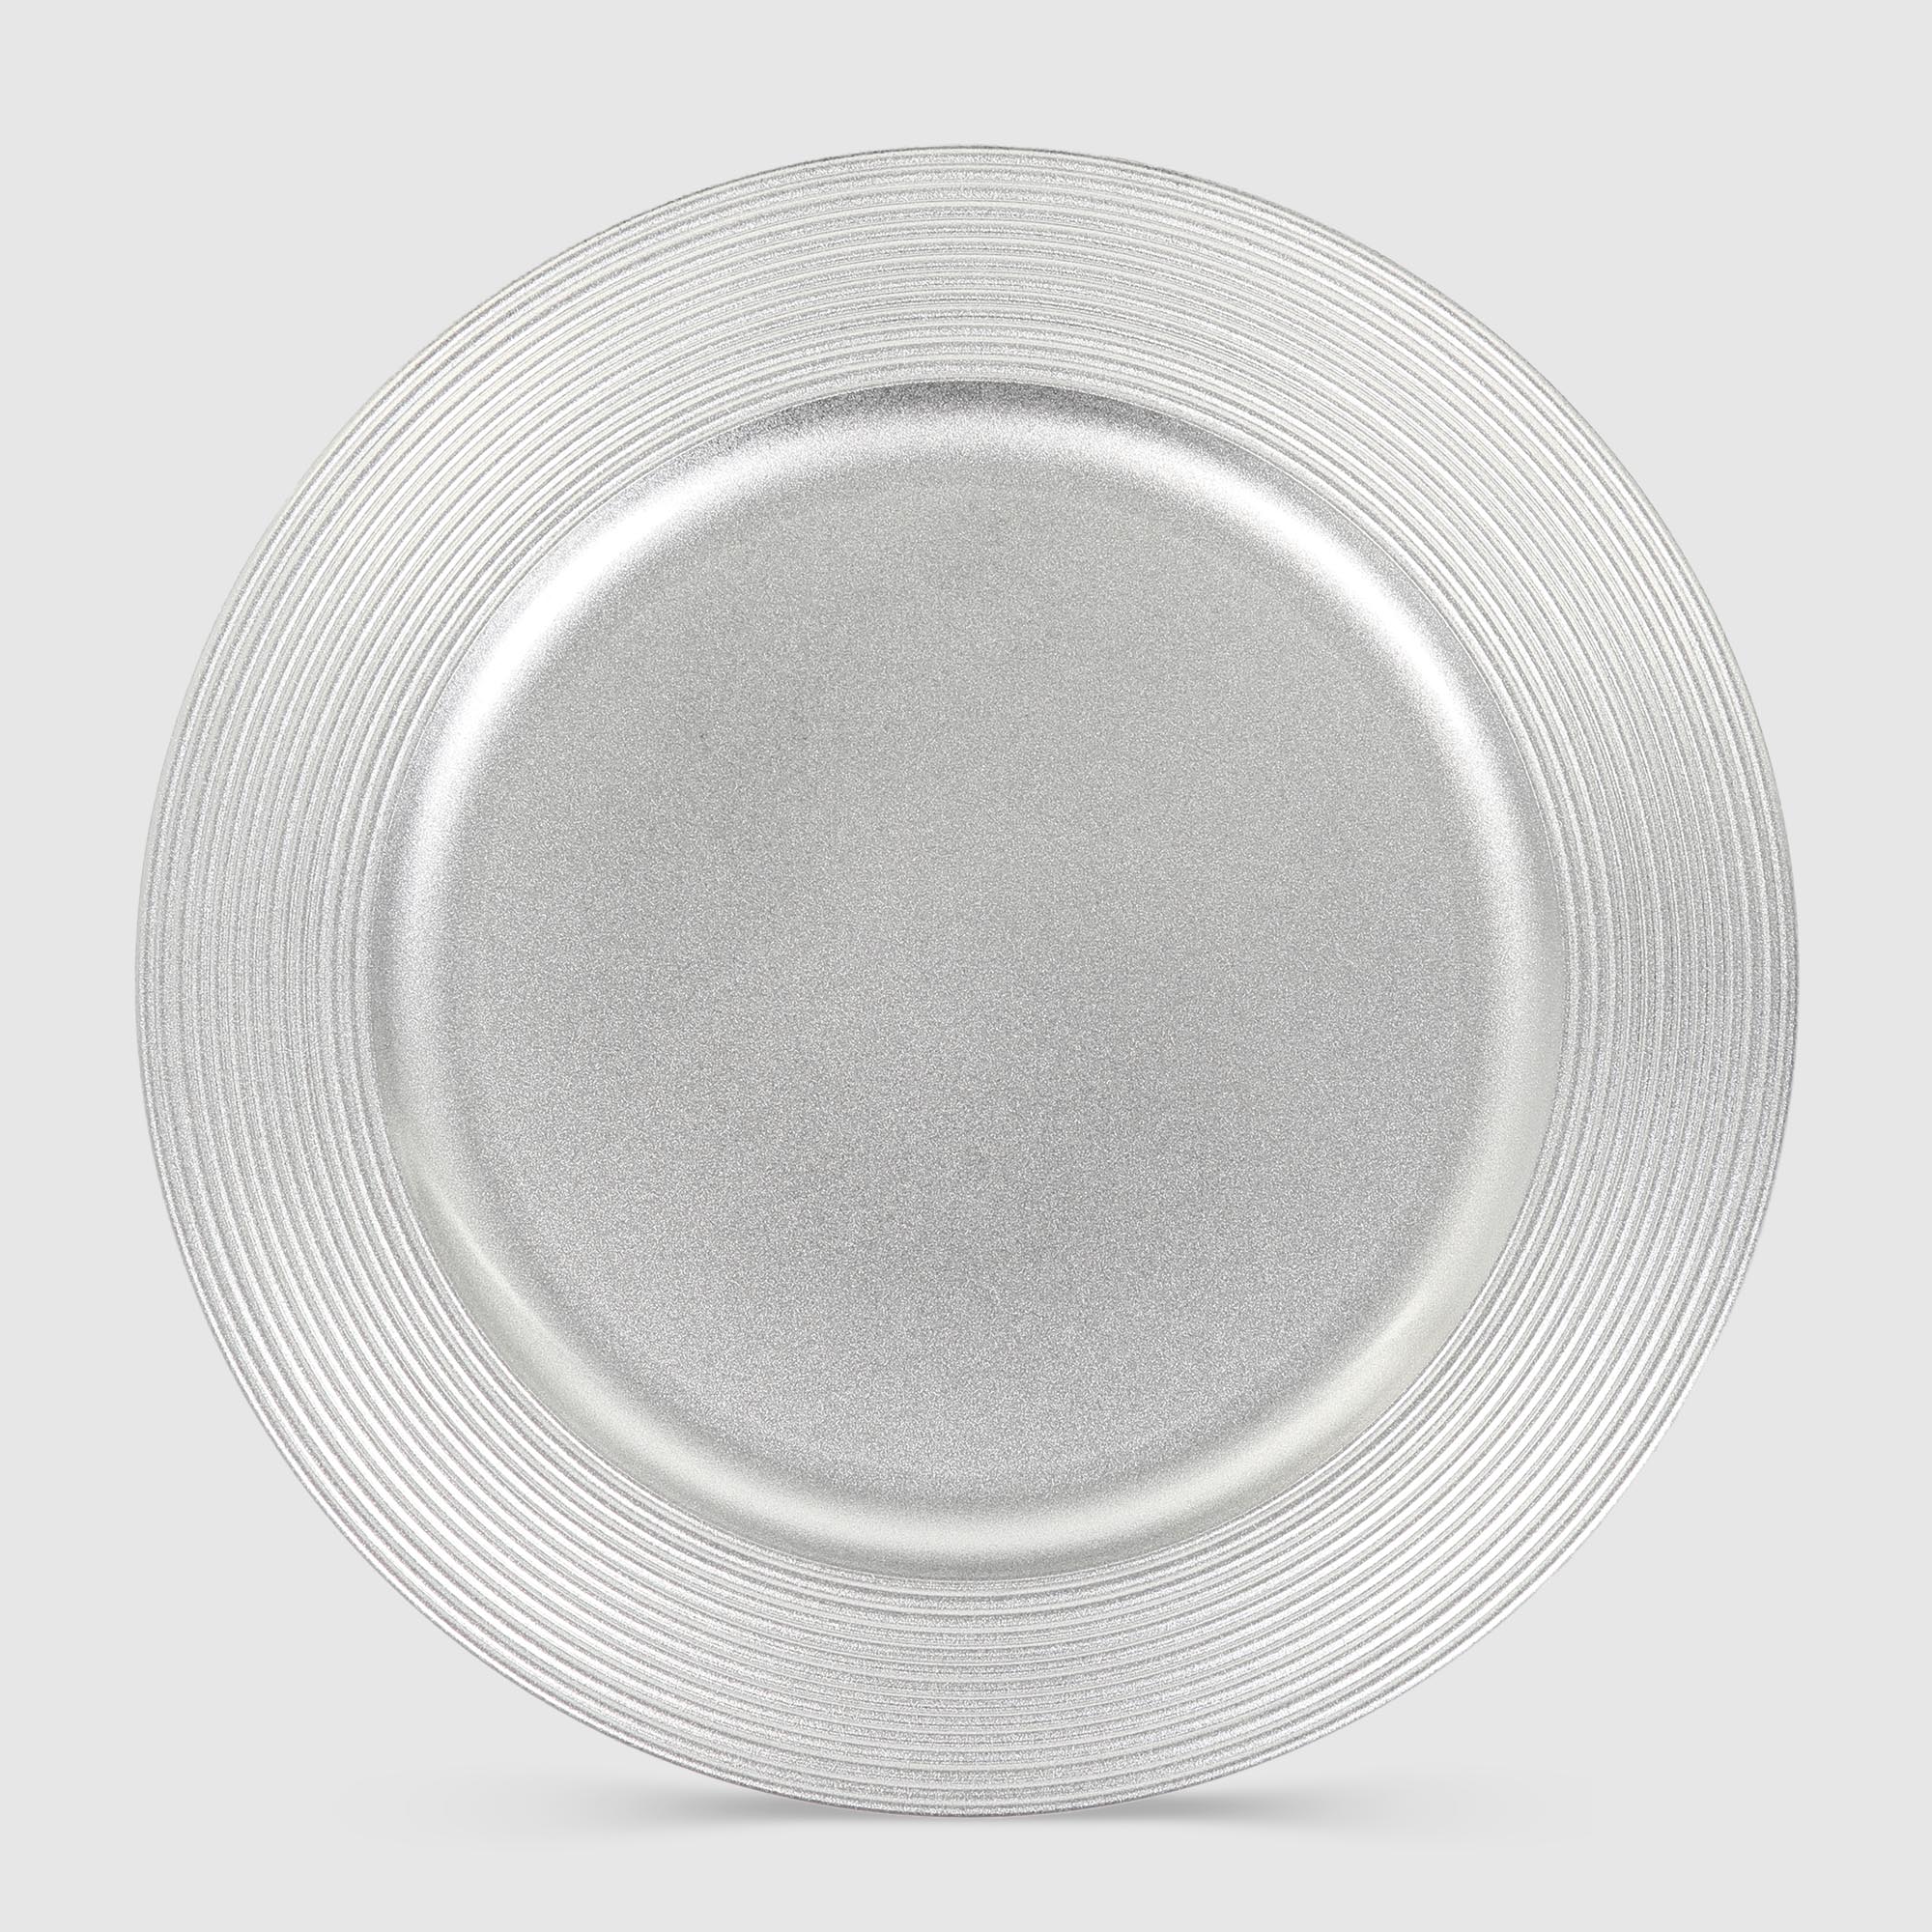 Подставка под горячее Mercury Tableware Circle серебро 33 см подставка для тарелок и разделочных досок на 3 предмета 20×14×14 см серебро